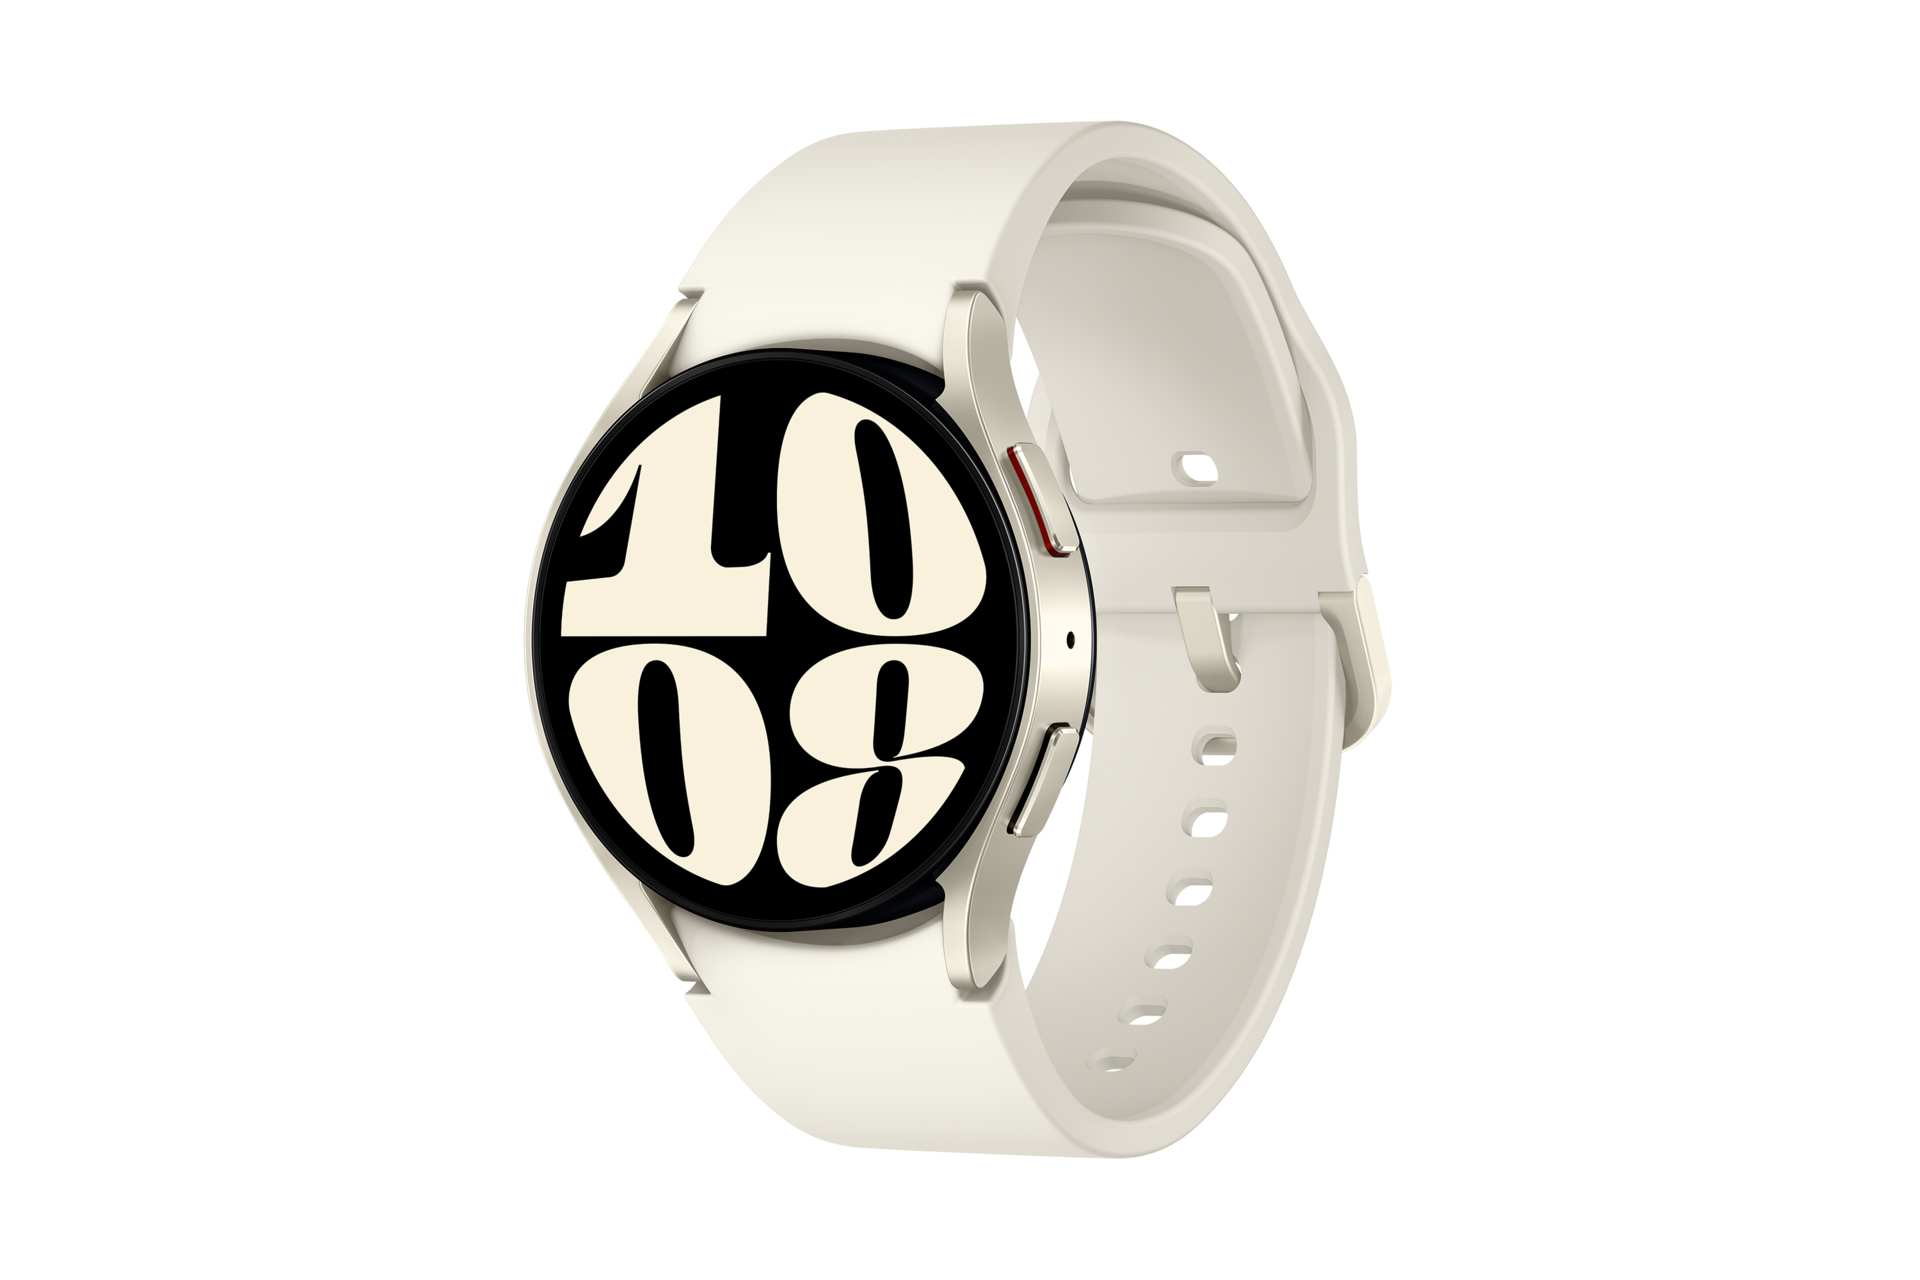 Galaxy Watch6 (Bluetooth, 40mm)